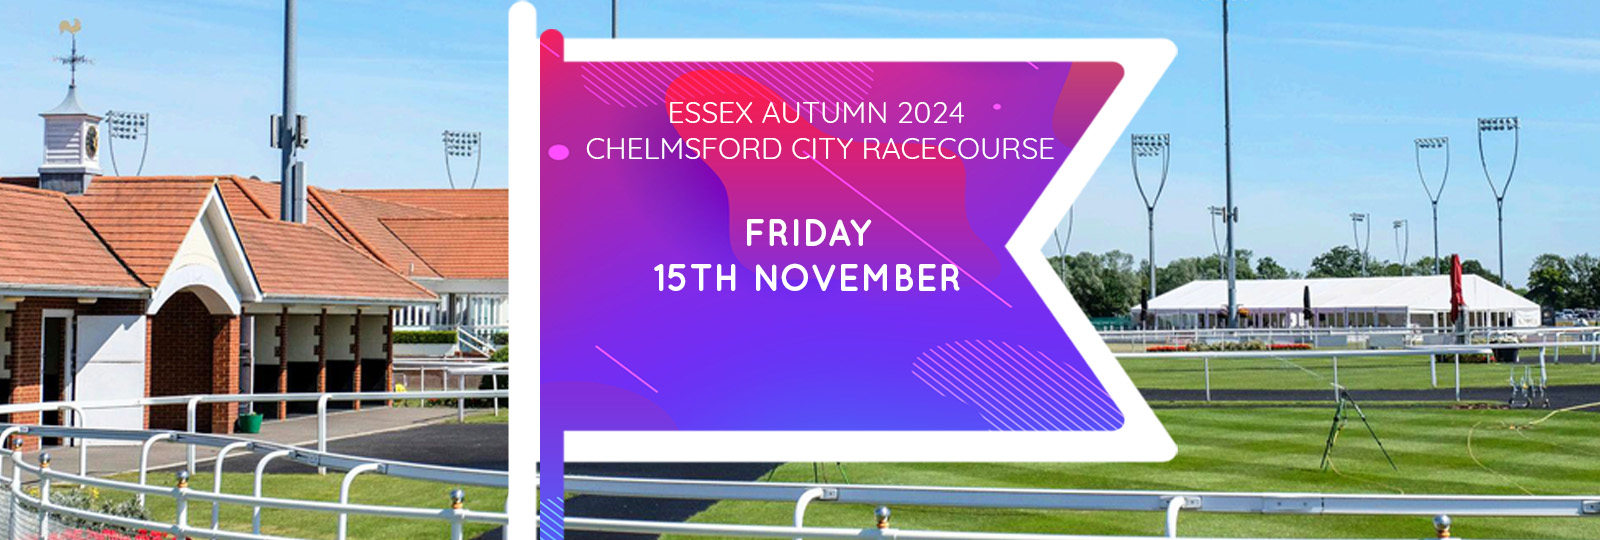 Essex Autumn 2024 Fair